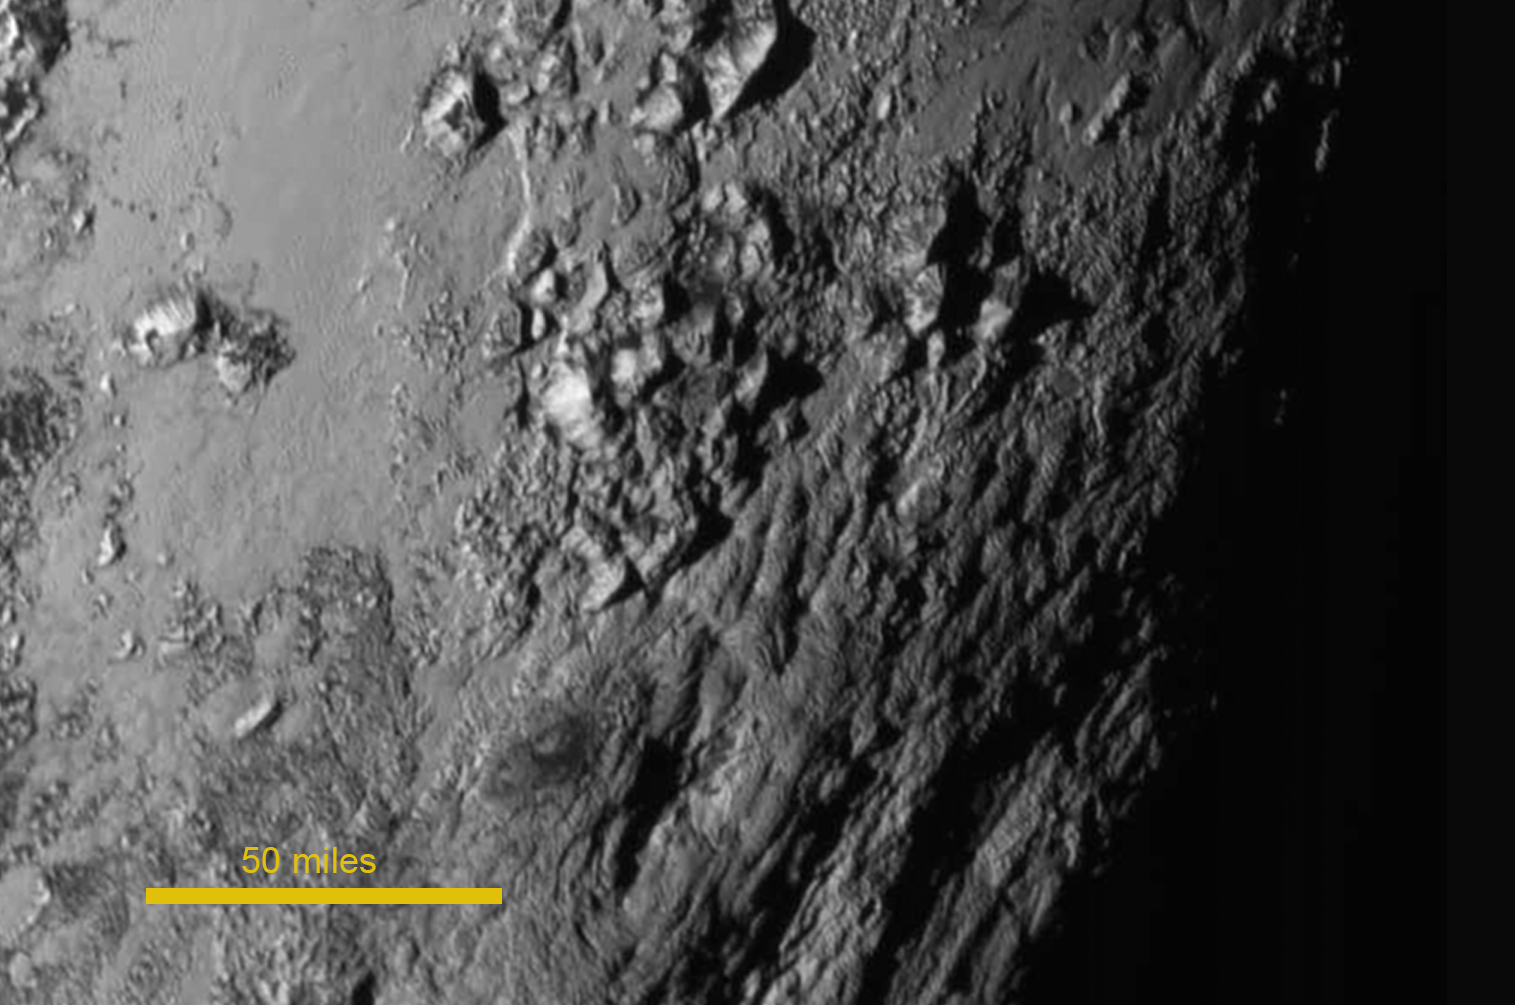 Bergen op oppervlak Pluto door New Horizons